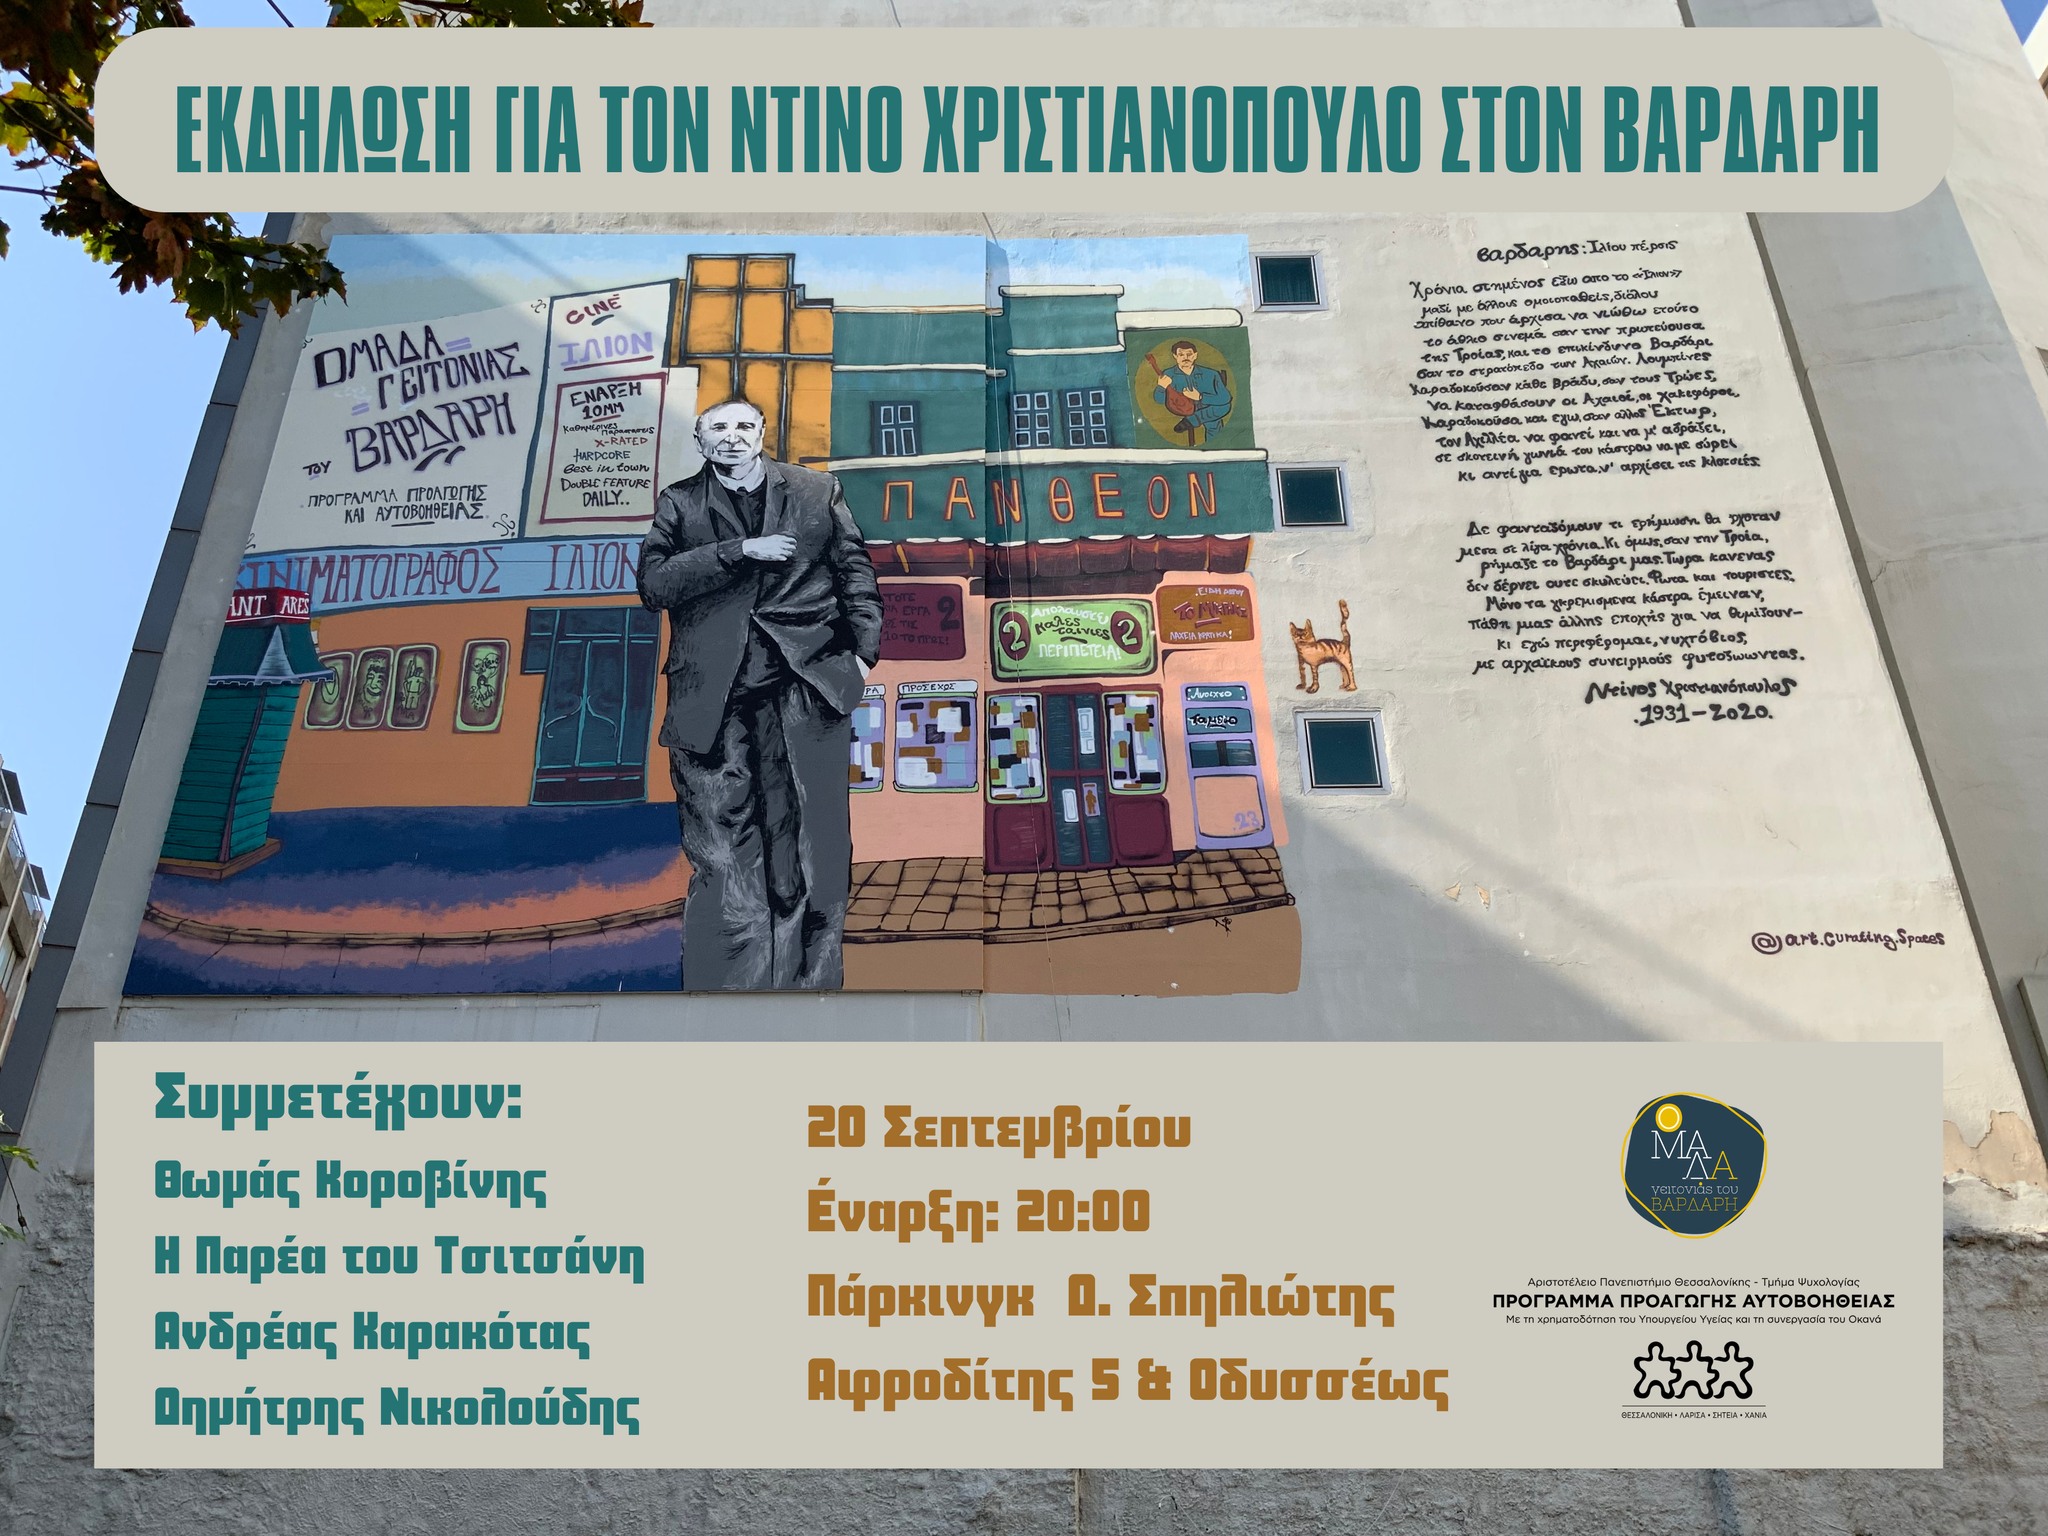 Θεσσαλονίκη: Εκδήλωση μνήμης για τον Ντίνο Χριστιανόπουλο